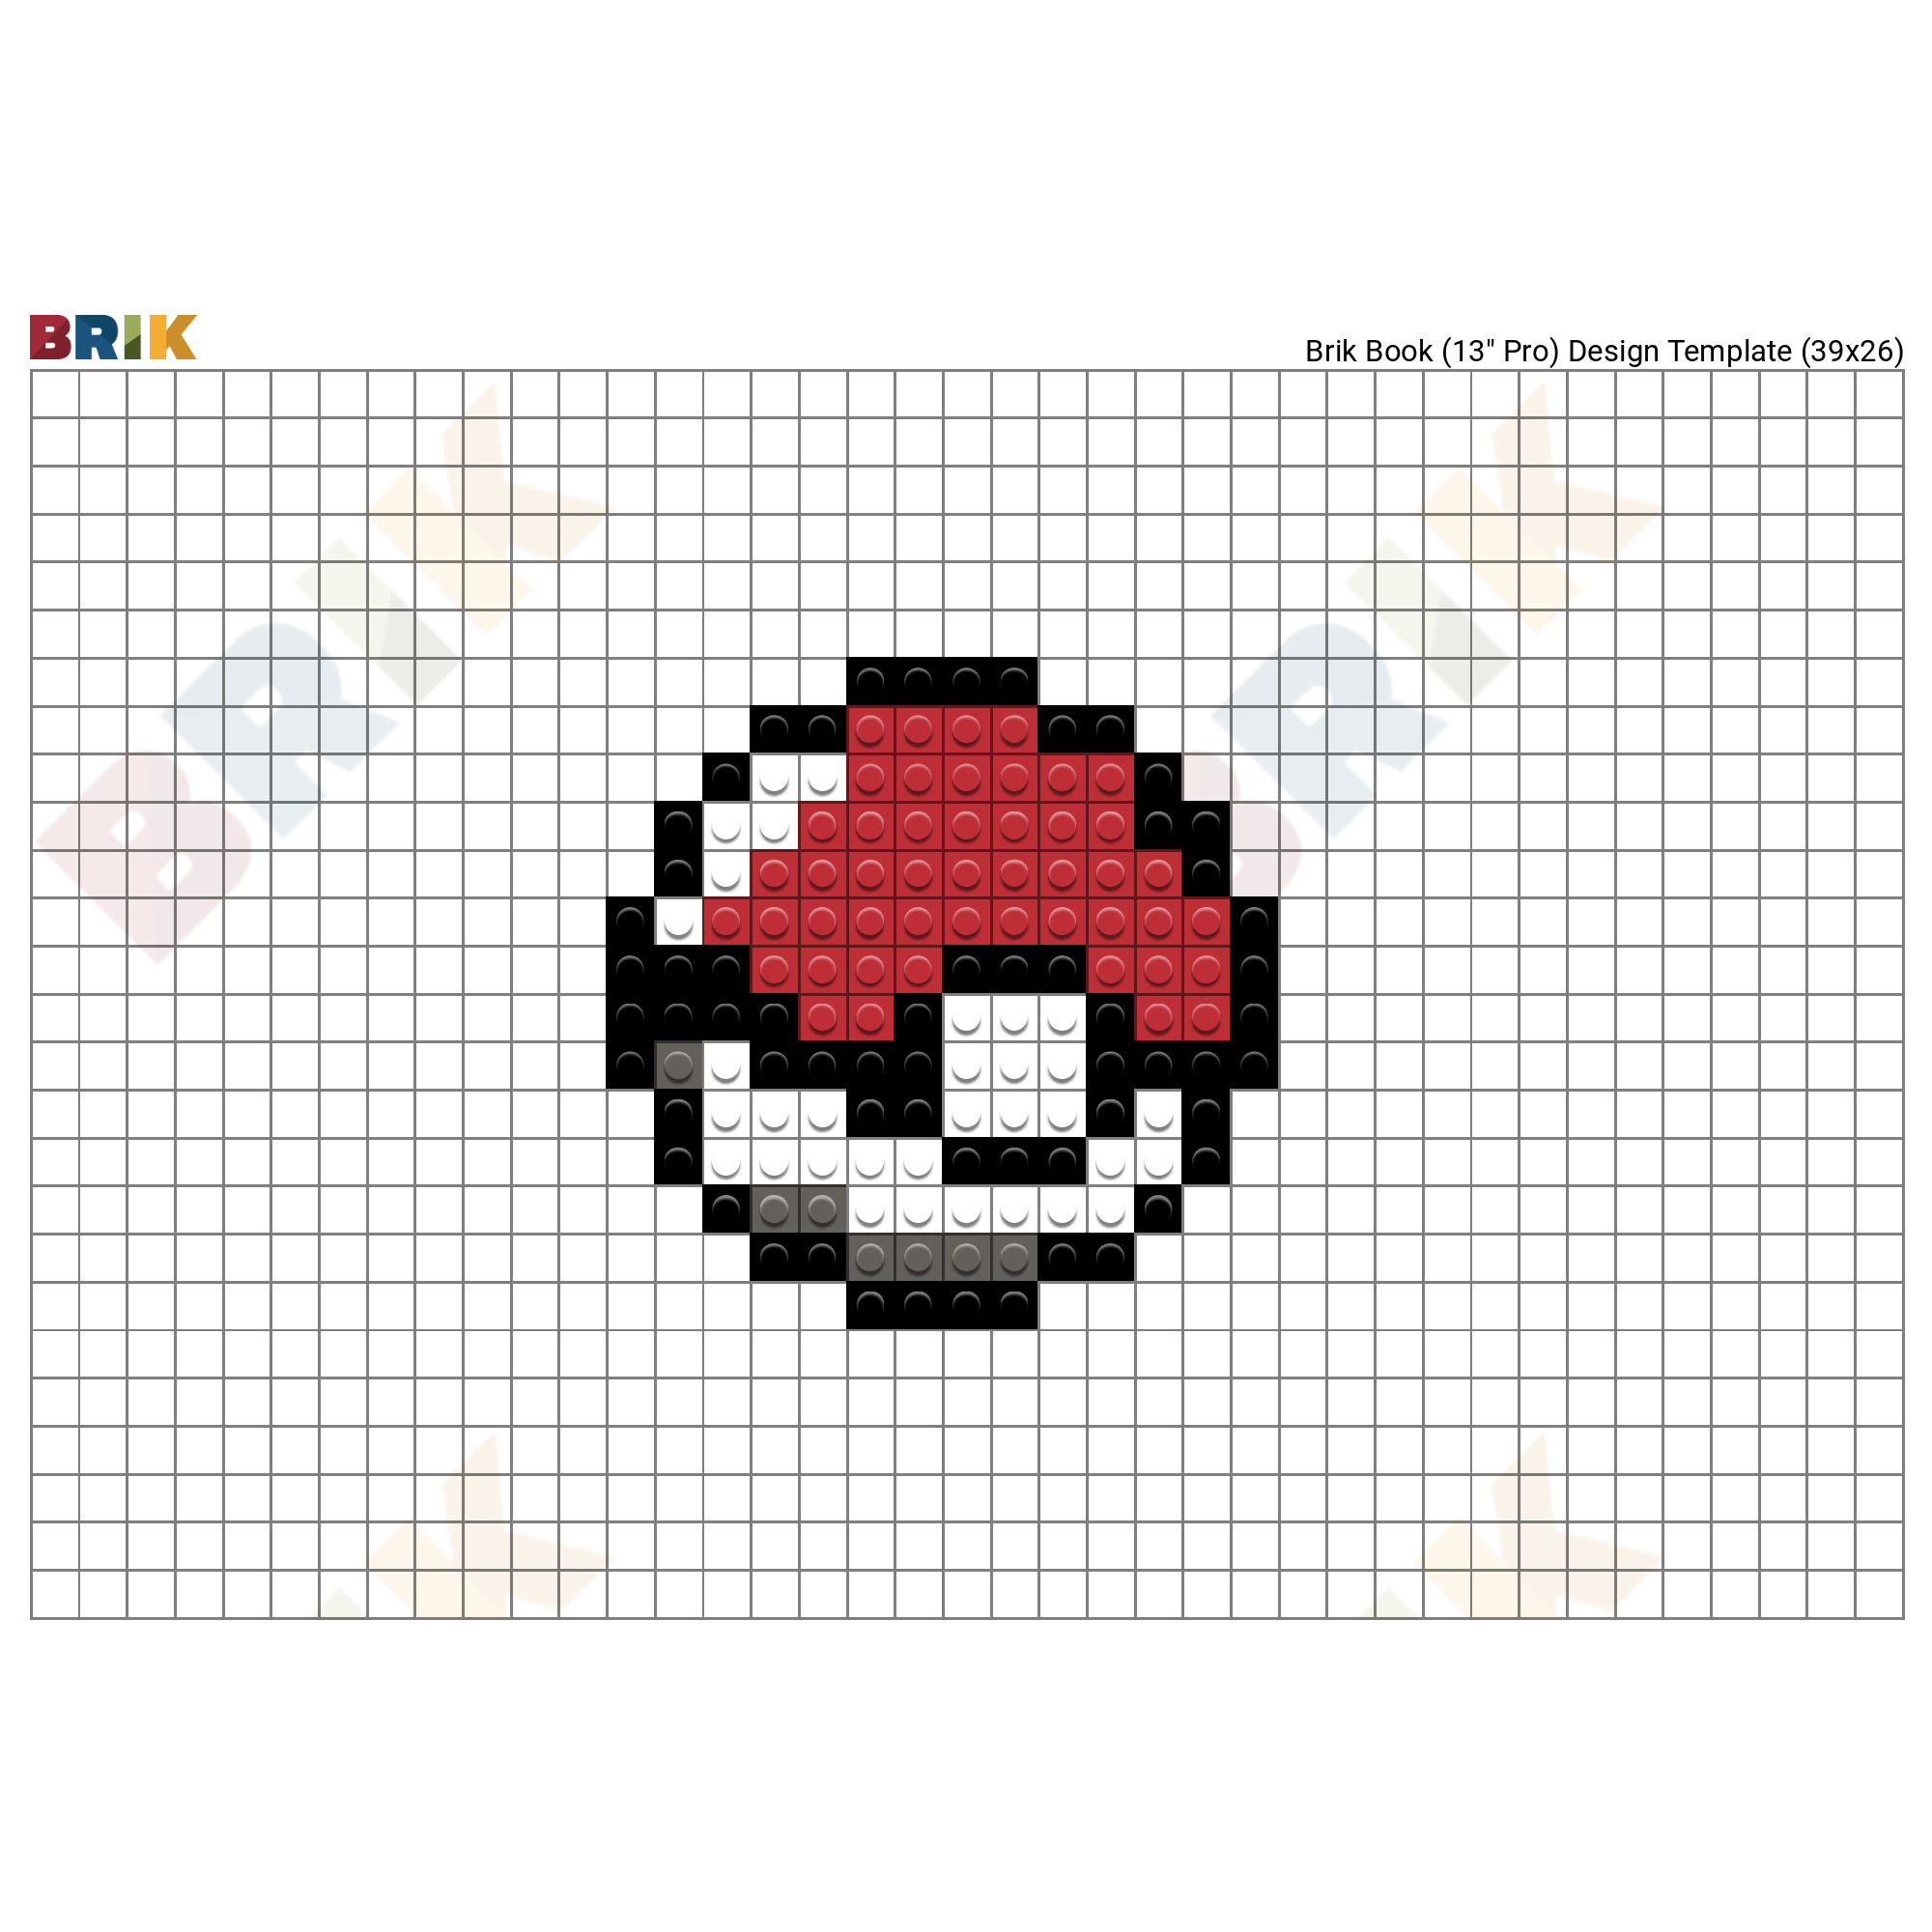 8-Bit Pokeball  Pixel art pokemon, Pixel art, Pixel art pattern